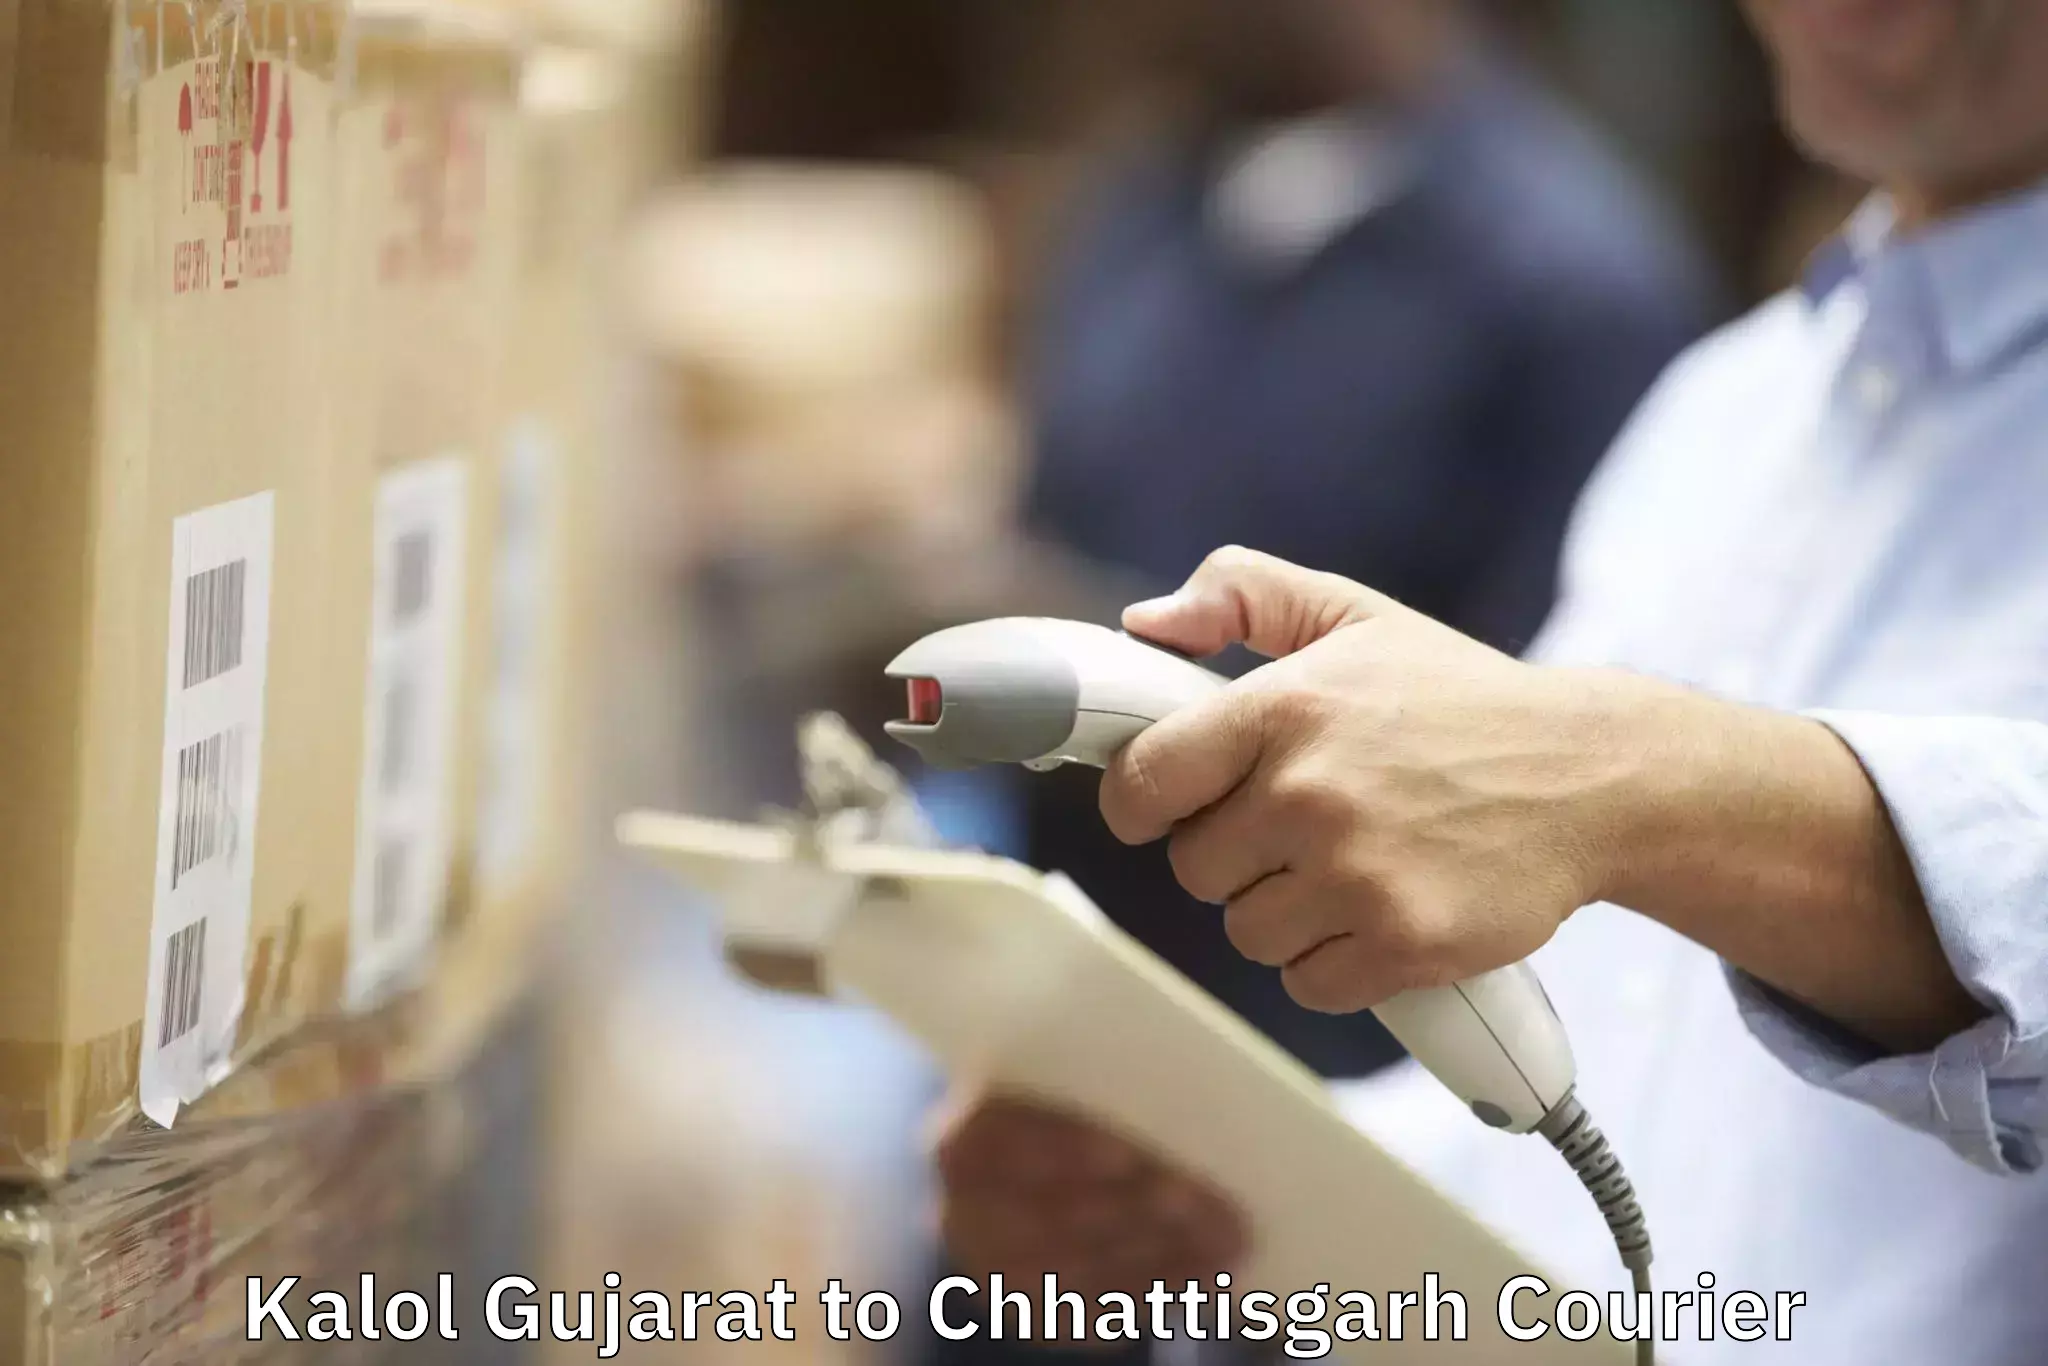 Efficient packing and moving Kalol Gujarat to Kondagaon